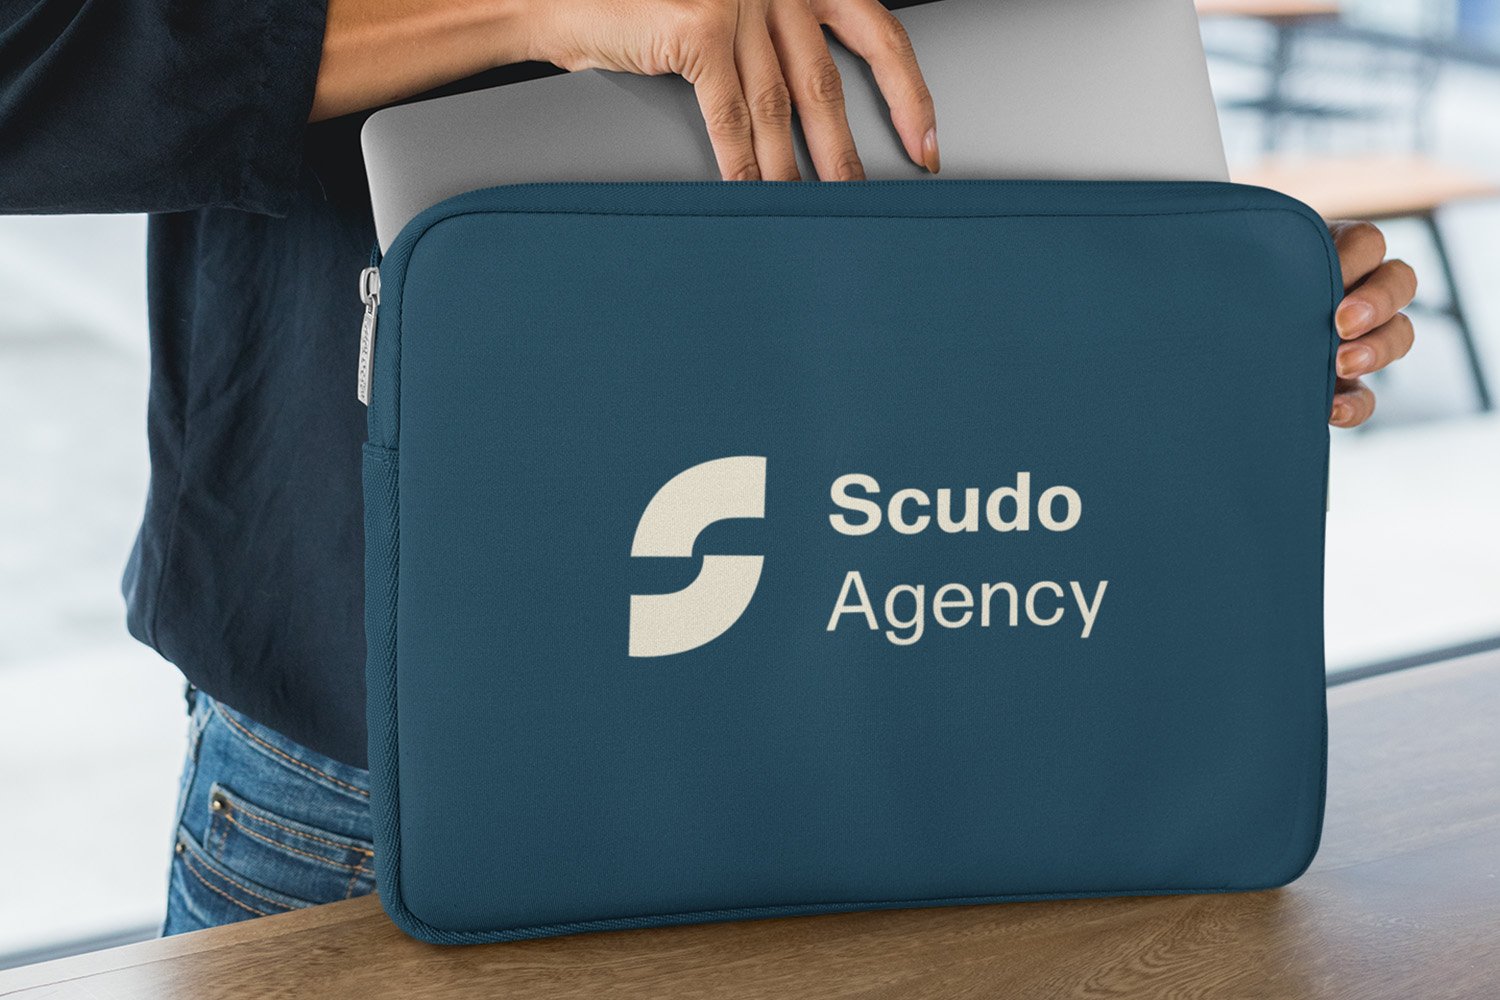 Scudo Agency Laptop.jpg